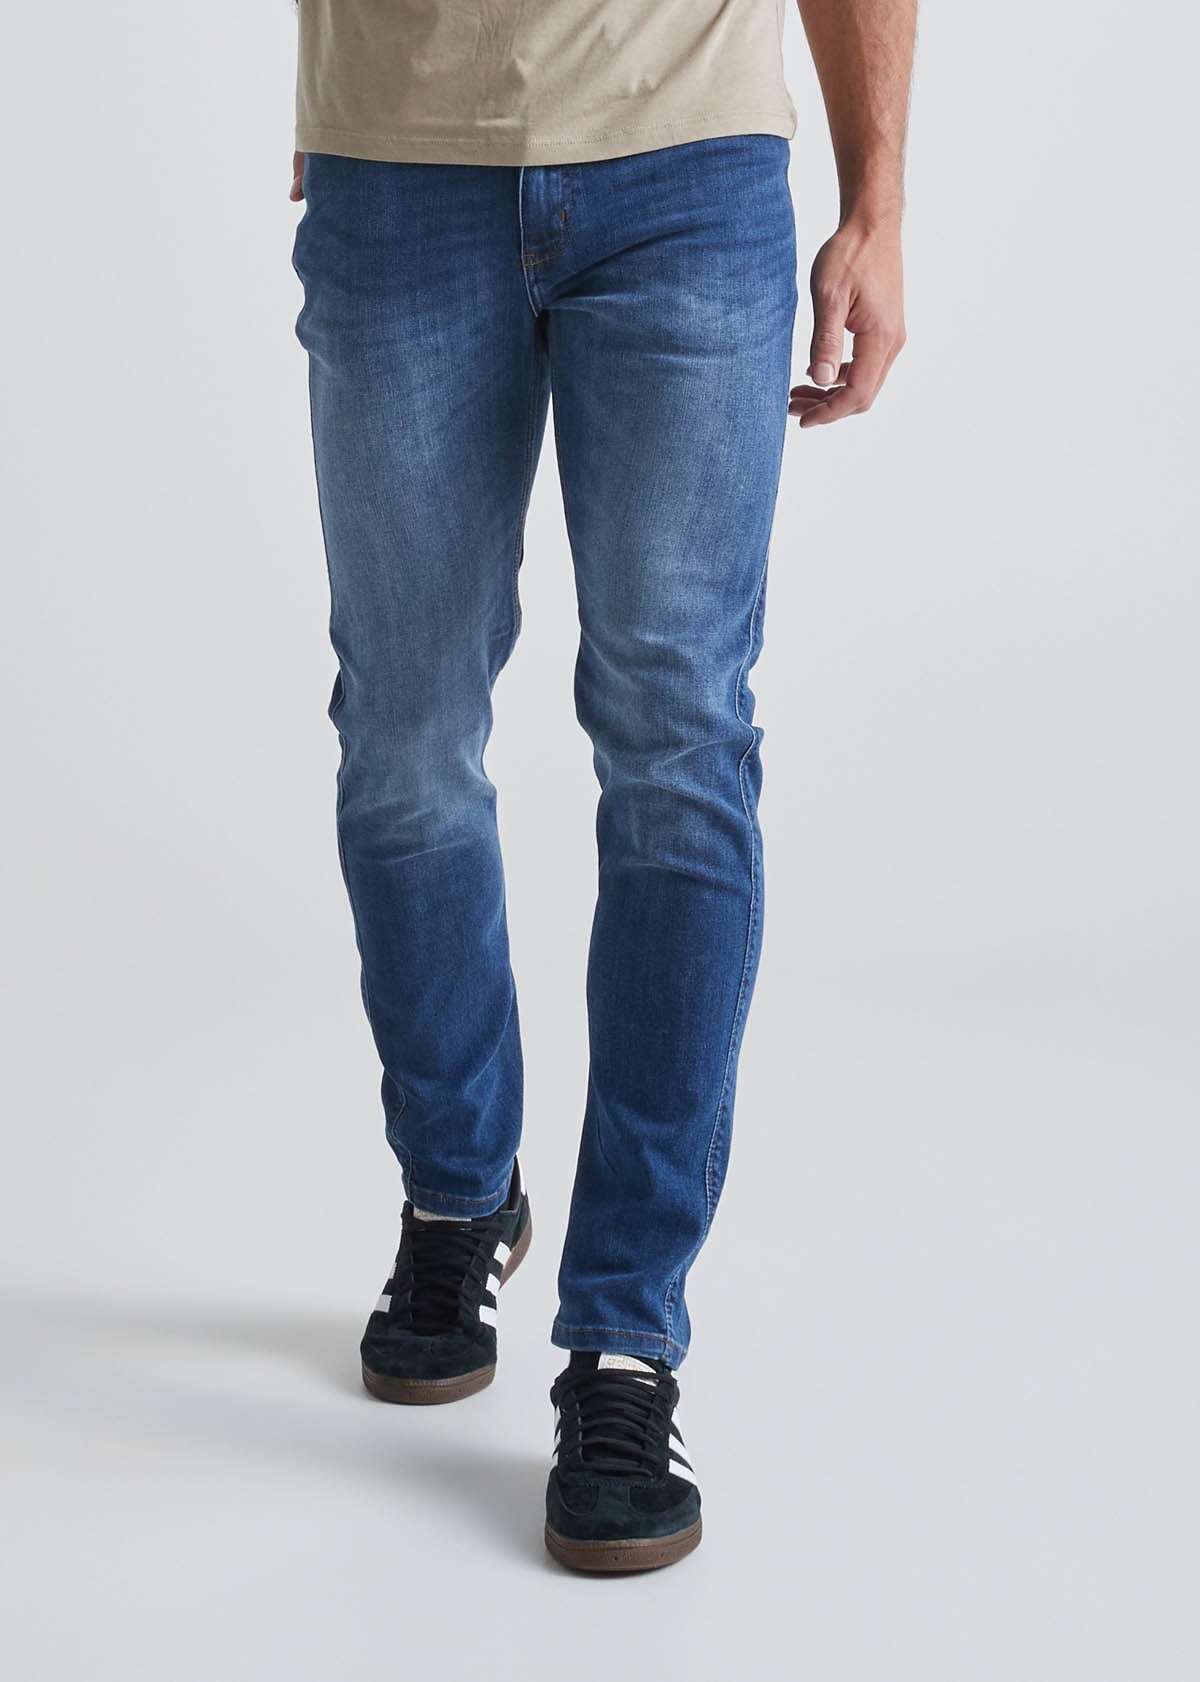 Men's Travel Pants & Jeans - DUER